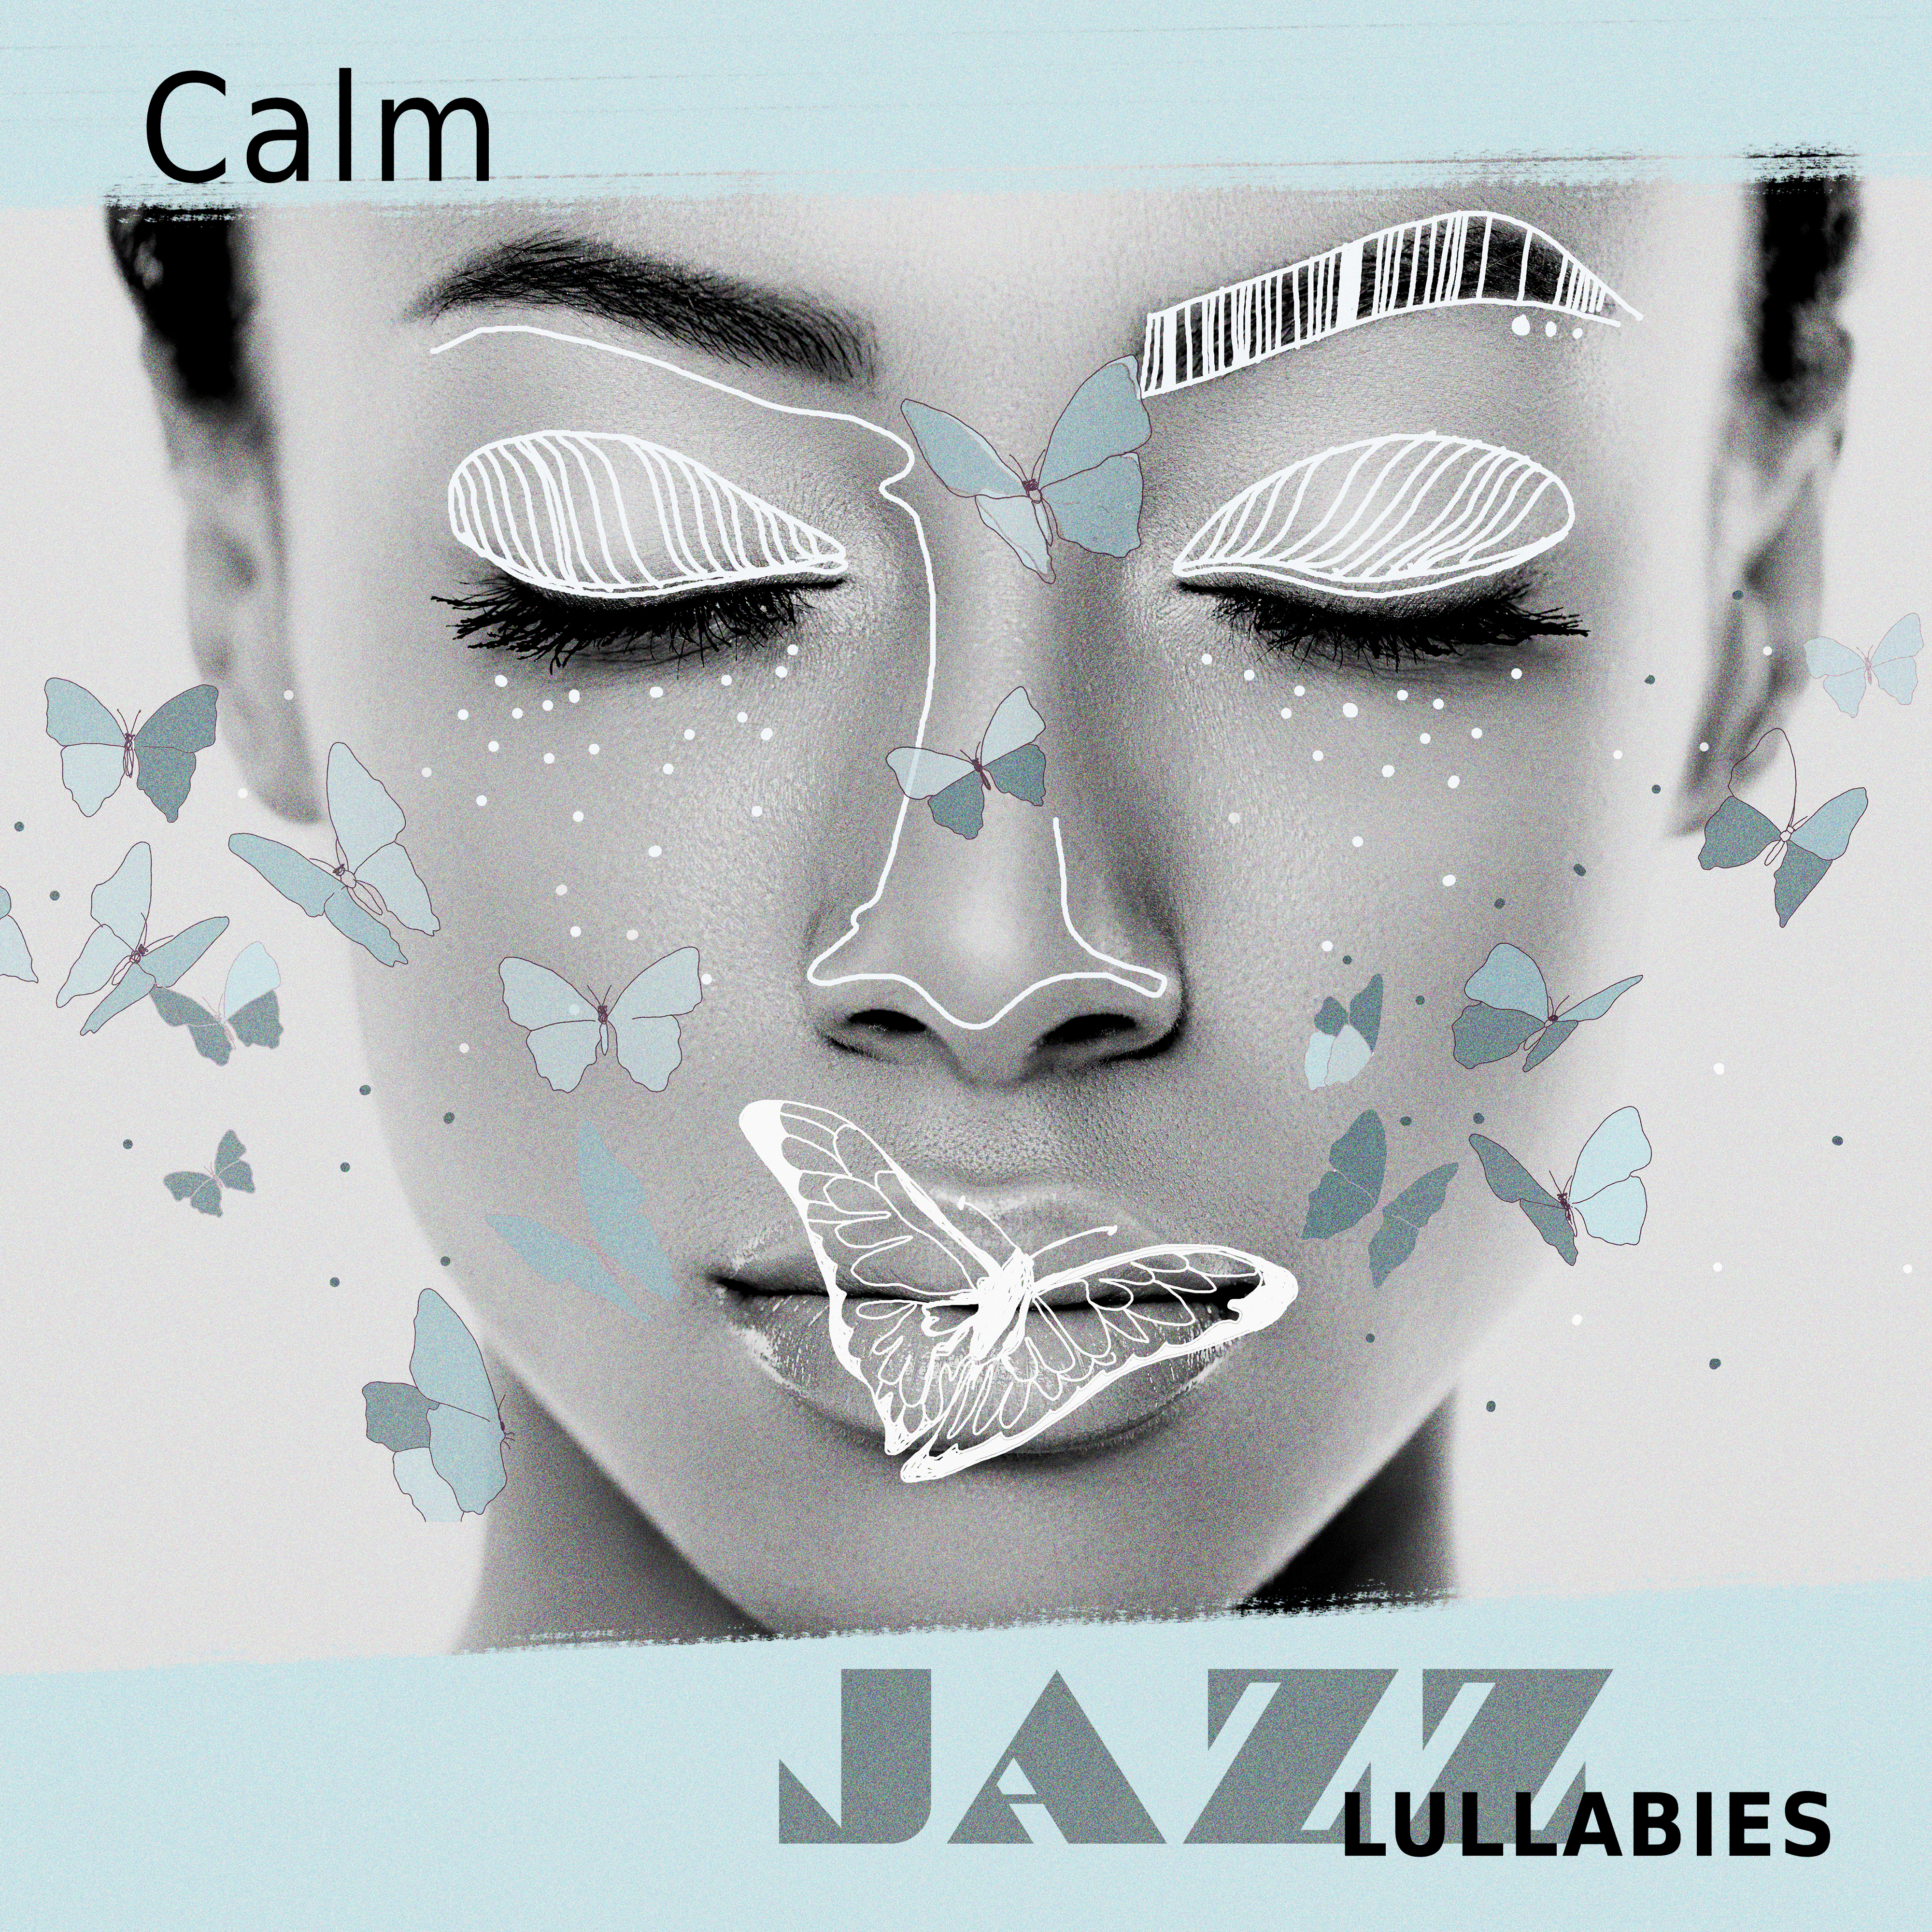 Calm Jazz Lullabies